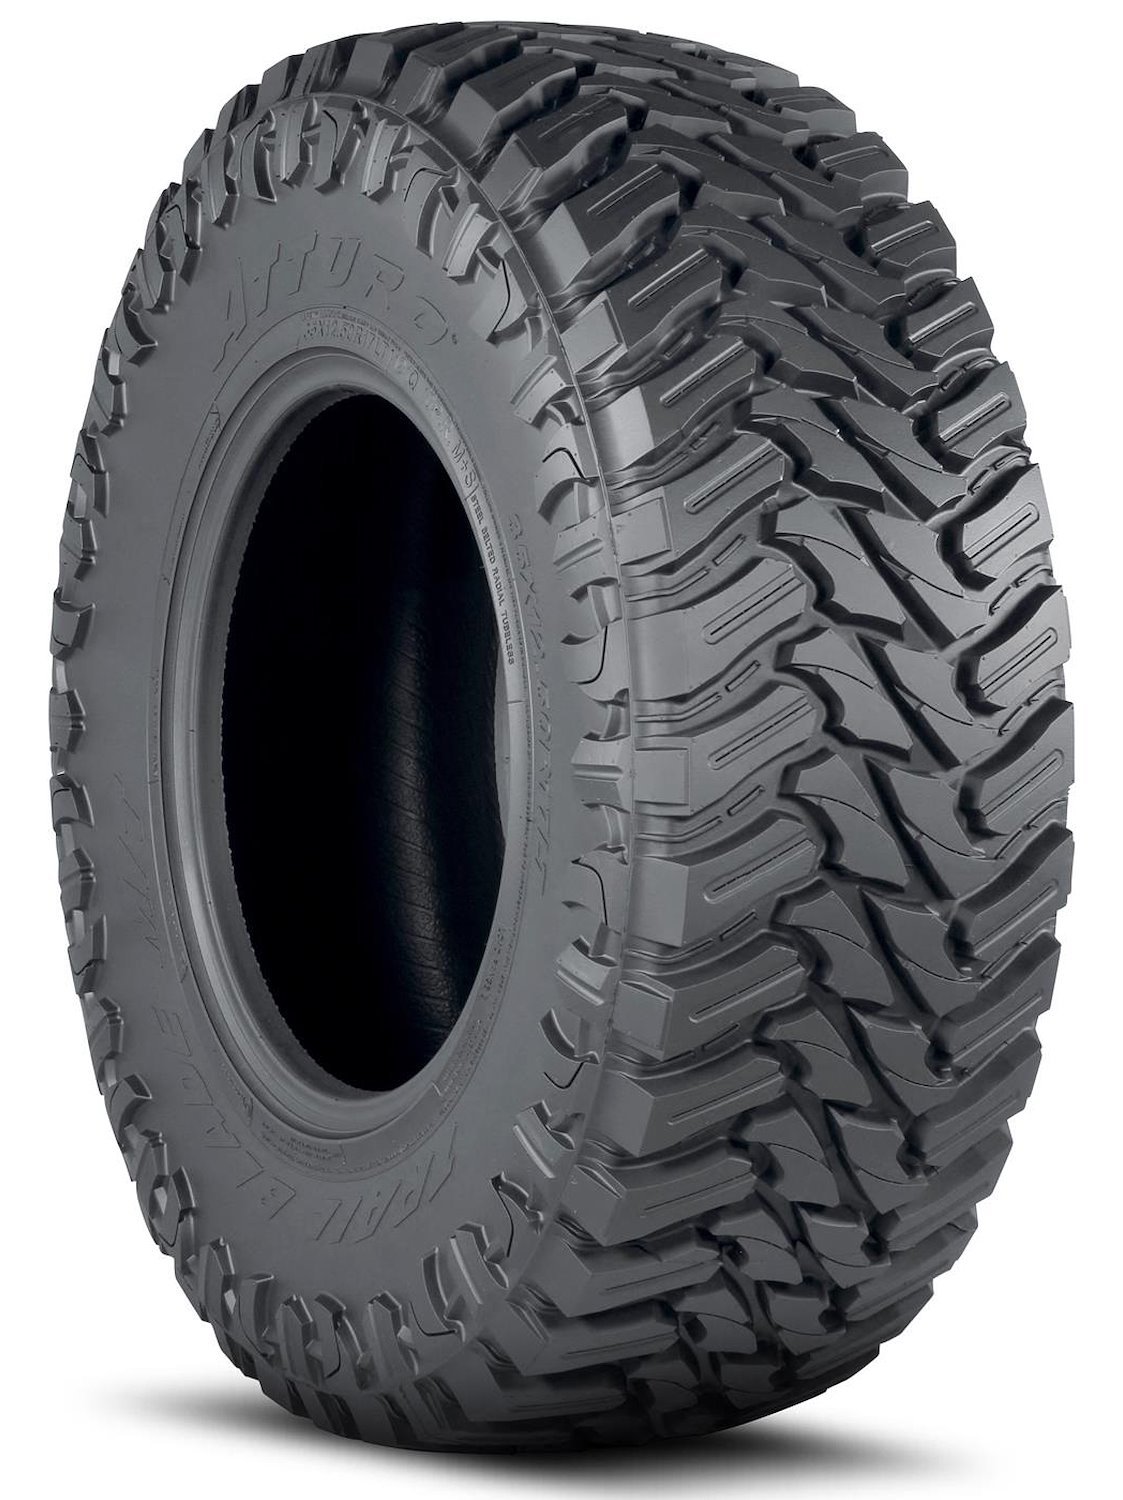 TBMT-LEJM2MA Trail Blade M/T Tire, 33x12.50R20LT